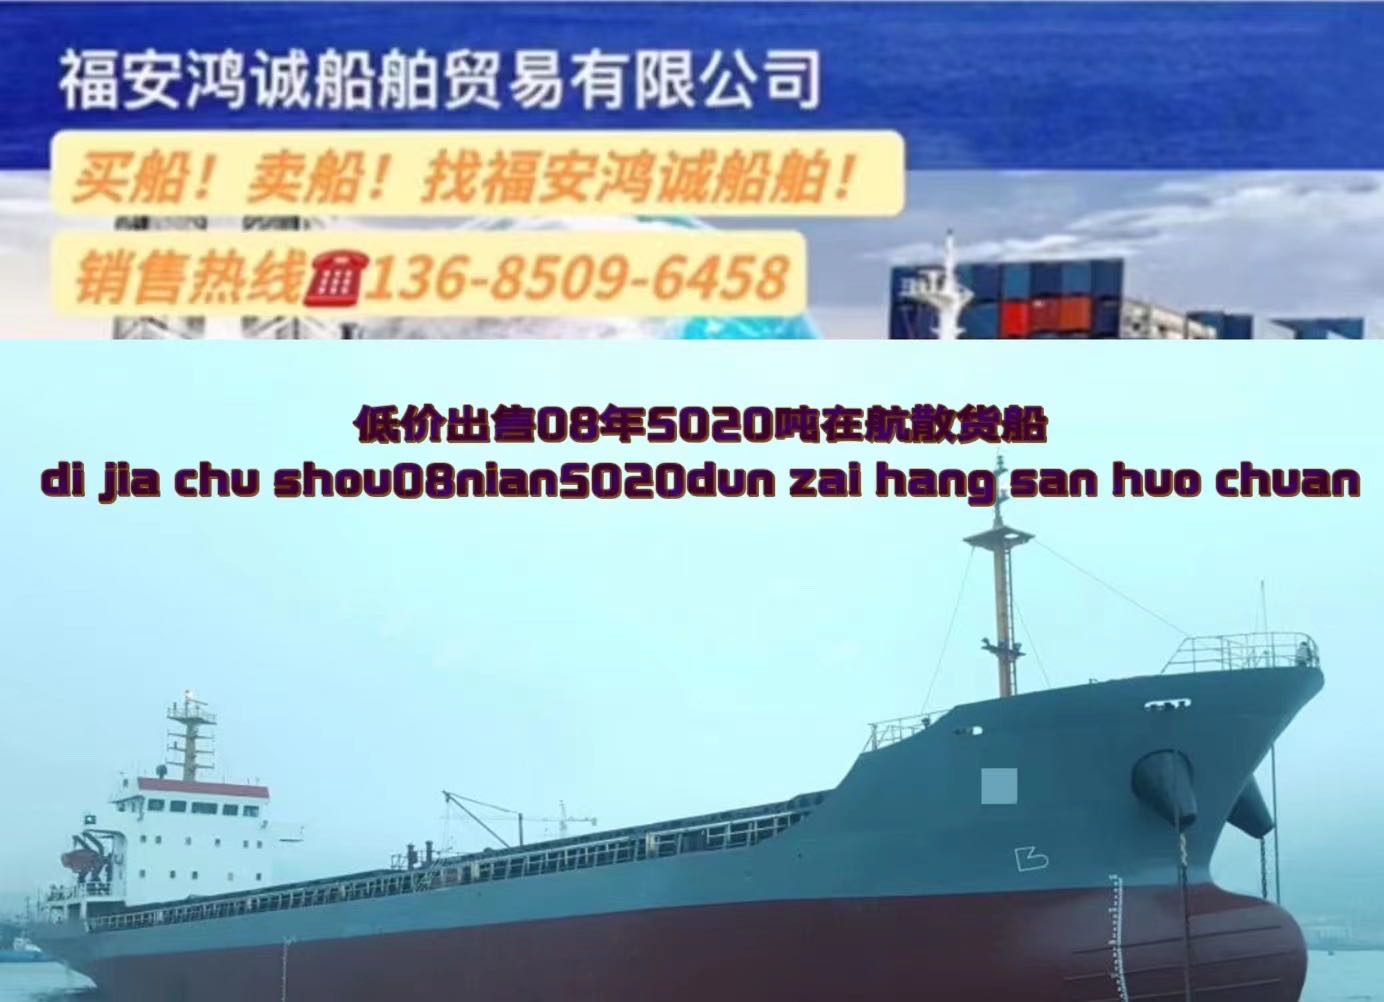 低价出售：5020吨在航散货船 2008年11月浙江台州建造